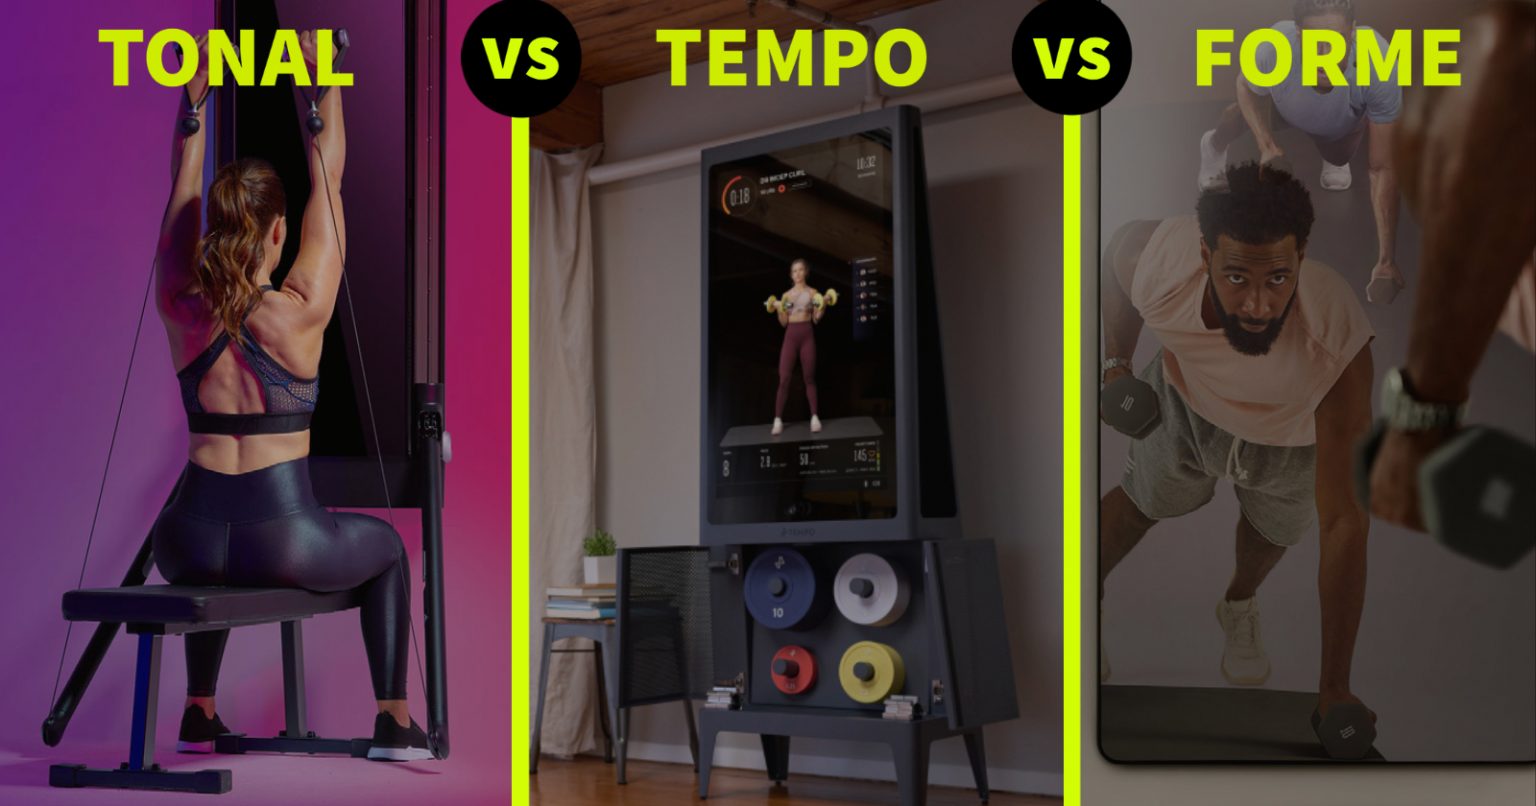 tonal-vs-tempo-vs-forme-life-best-smart-home-gyms-gym-vs-reviews